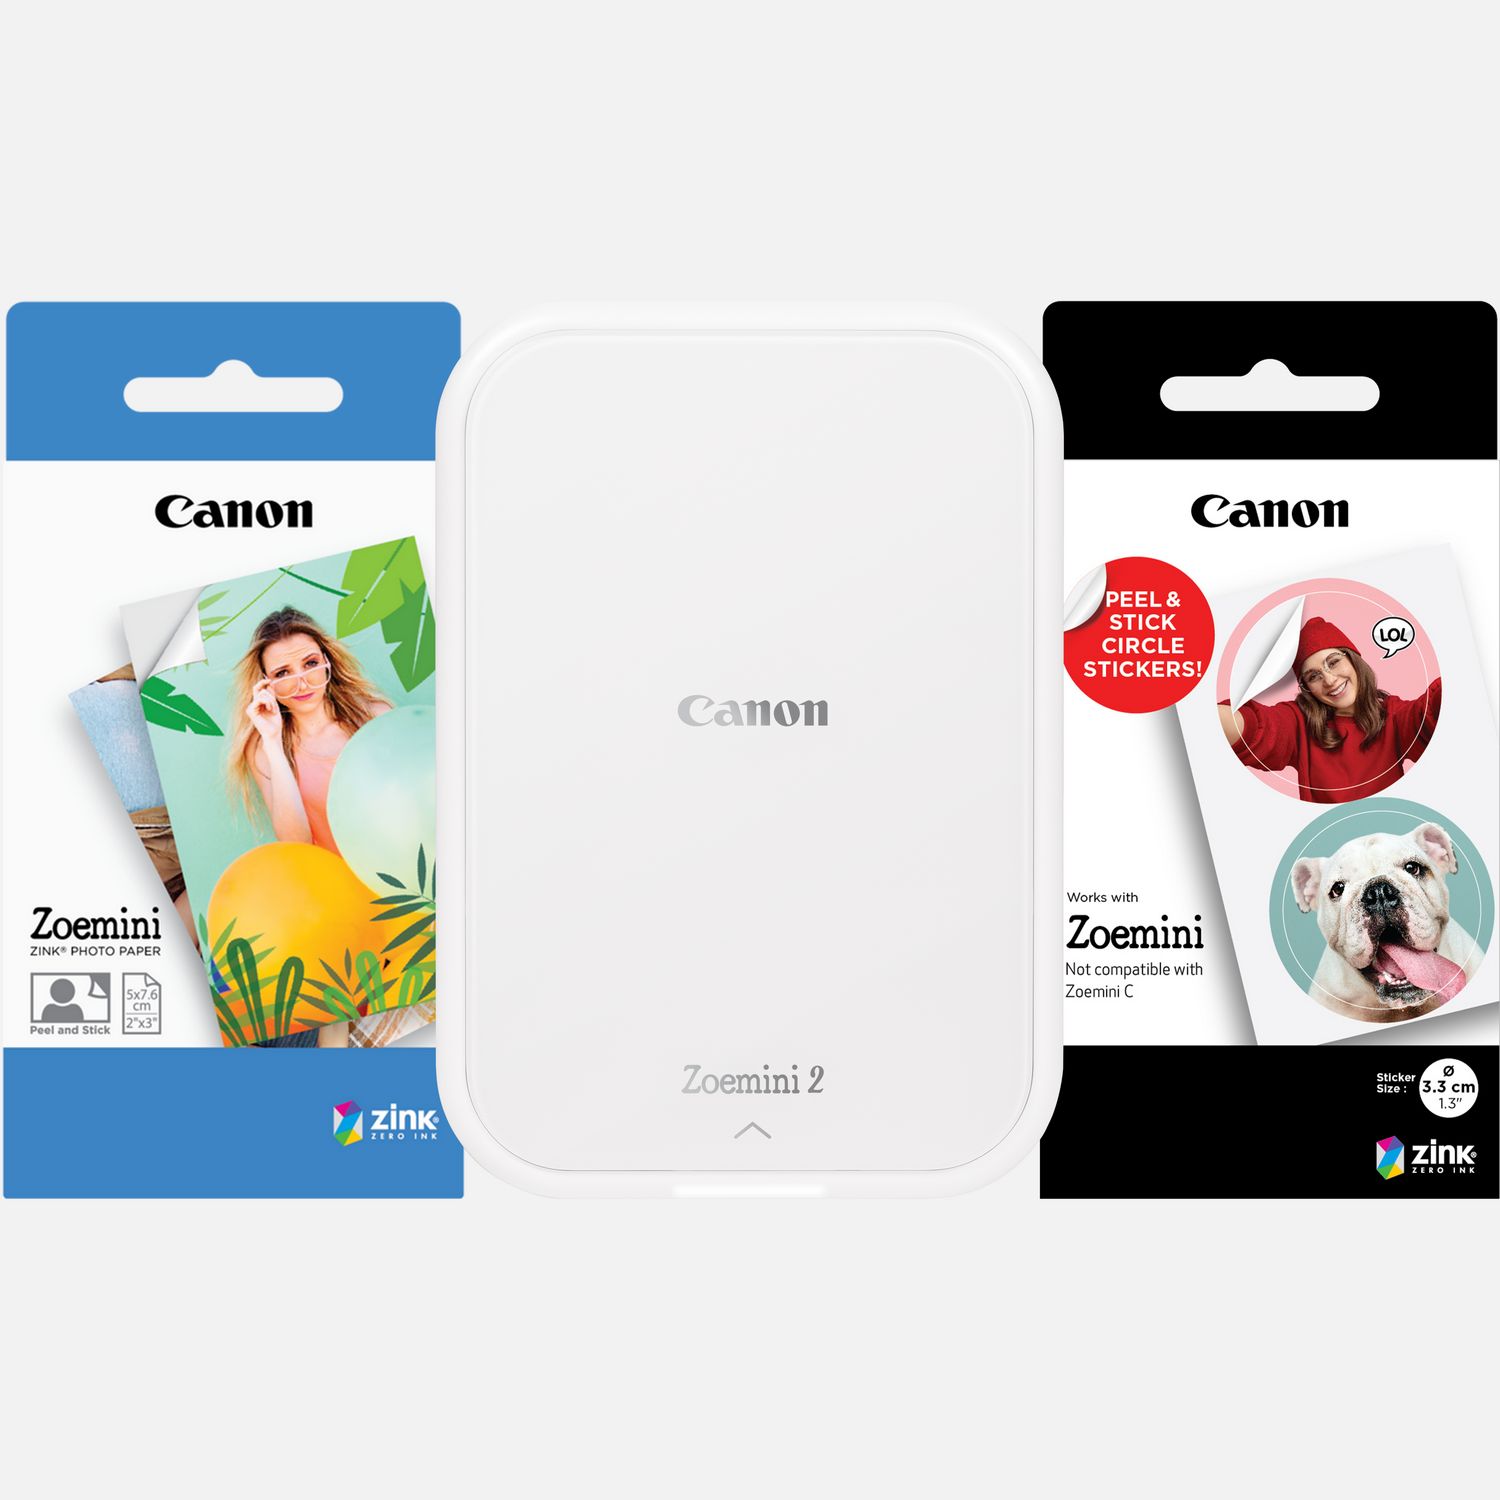 Compra Impresora fotográfica en color portátil Canon Zoemini 2, blanco + 20  hojas de papel fotográfico ZINK™ de 5 x 7,6 cm + 10 hojas de papel adhesivo  circular ZINK™ de 3,3 cm — Tienda Canon Espana